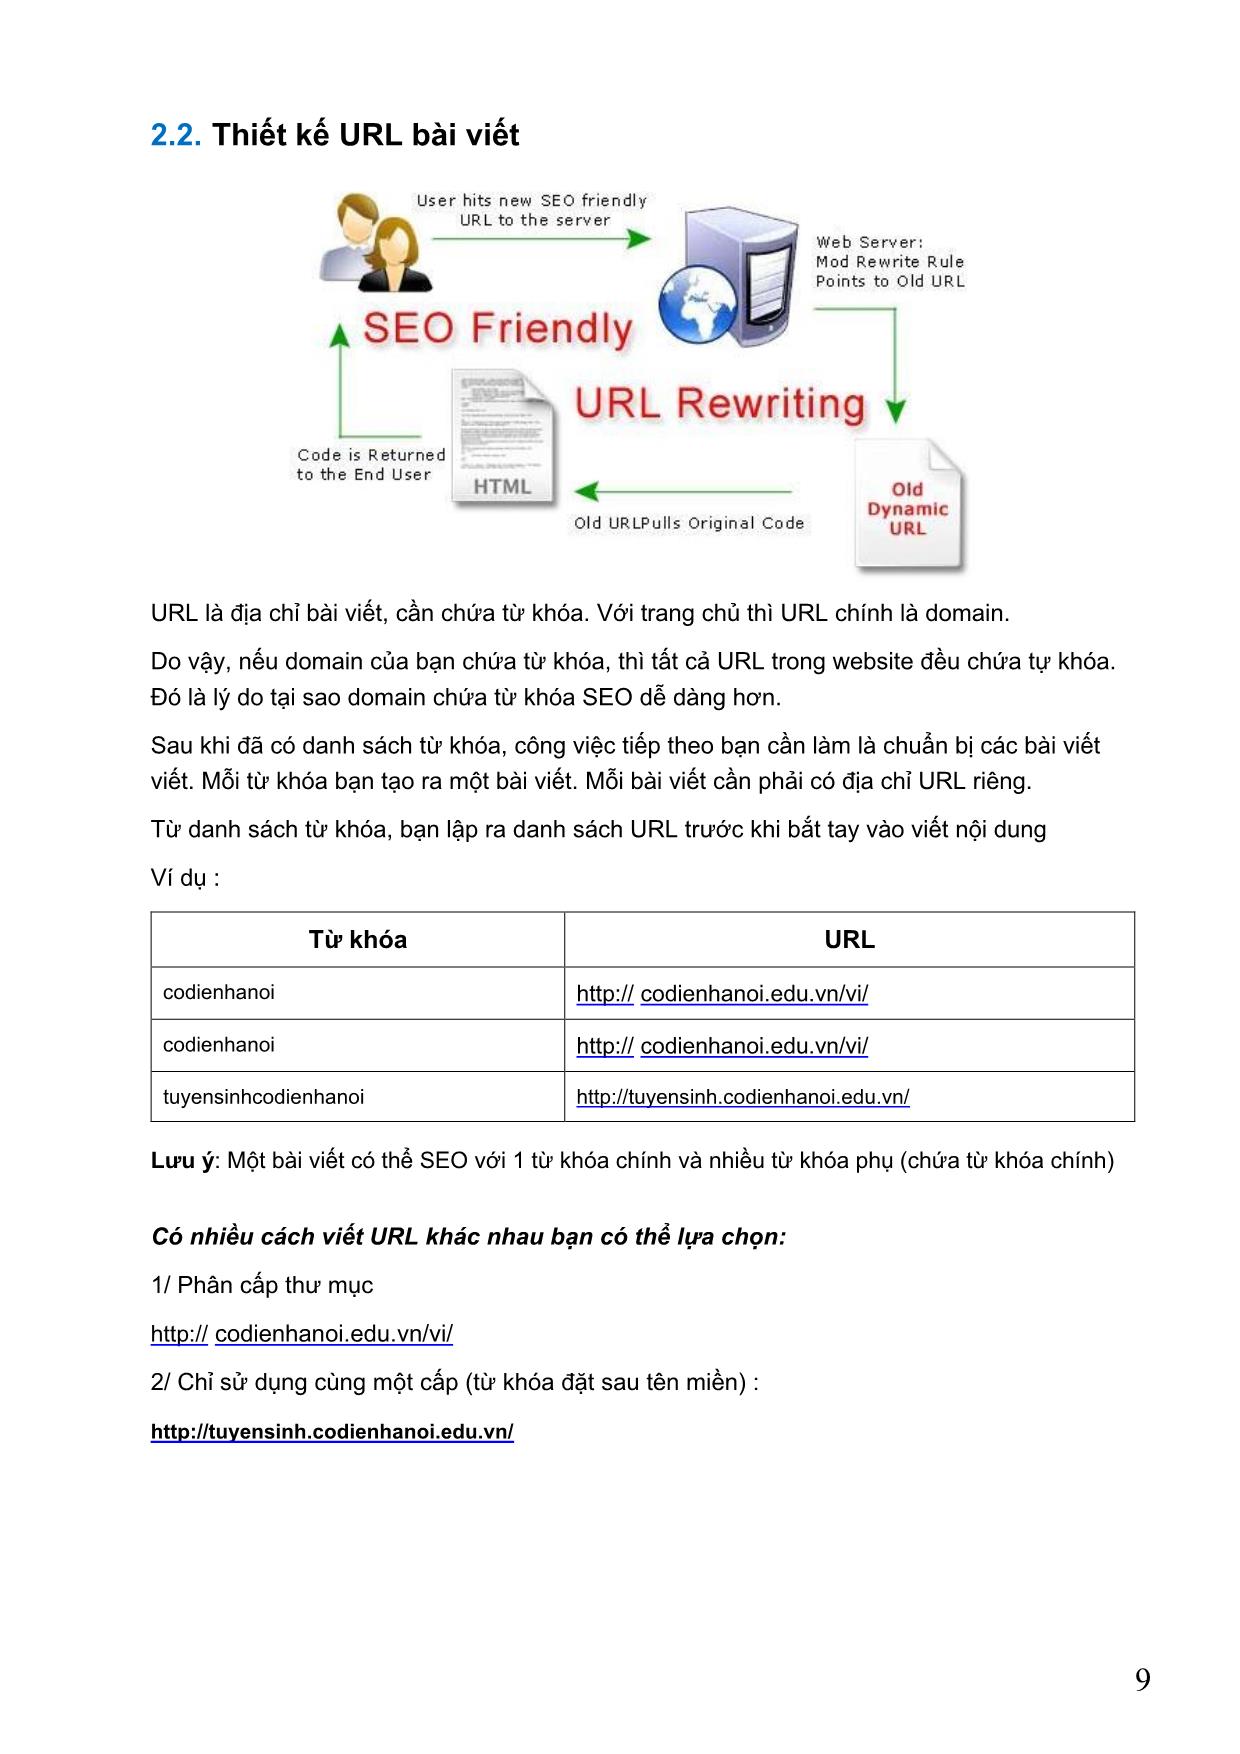 Giáo trình Tối ưu hóa máy tìm kiếm cho web (SEO) trang 9